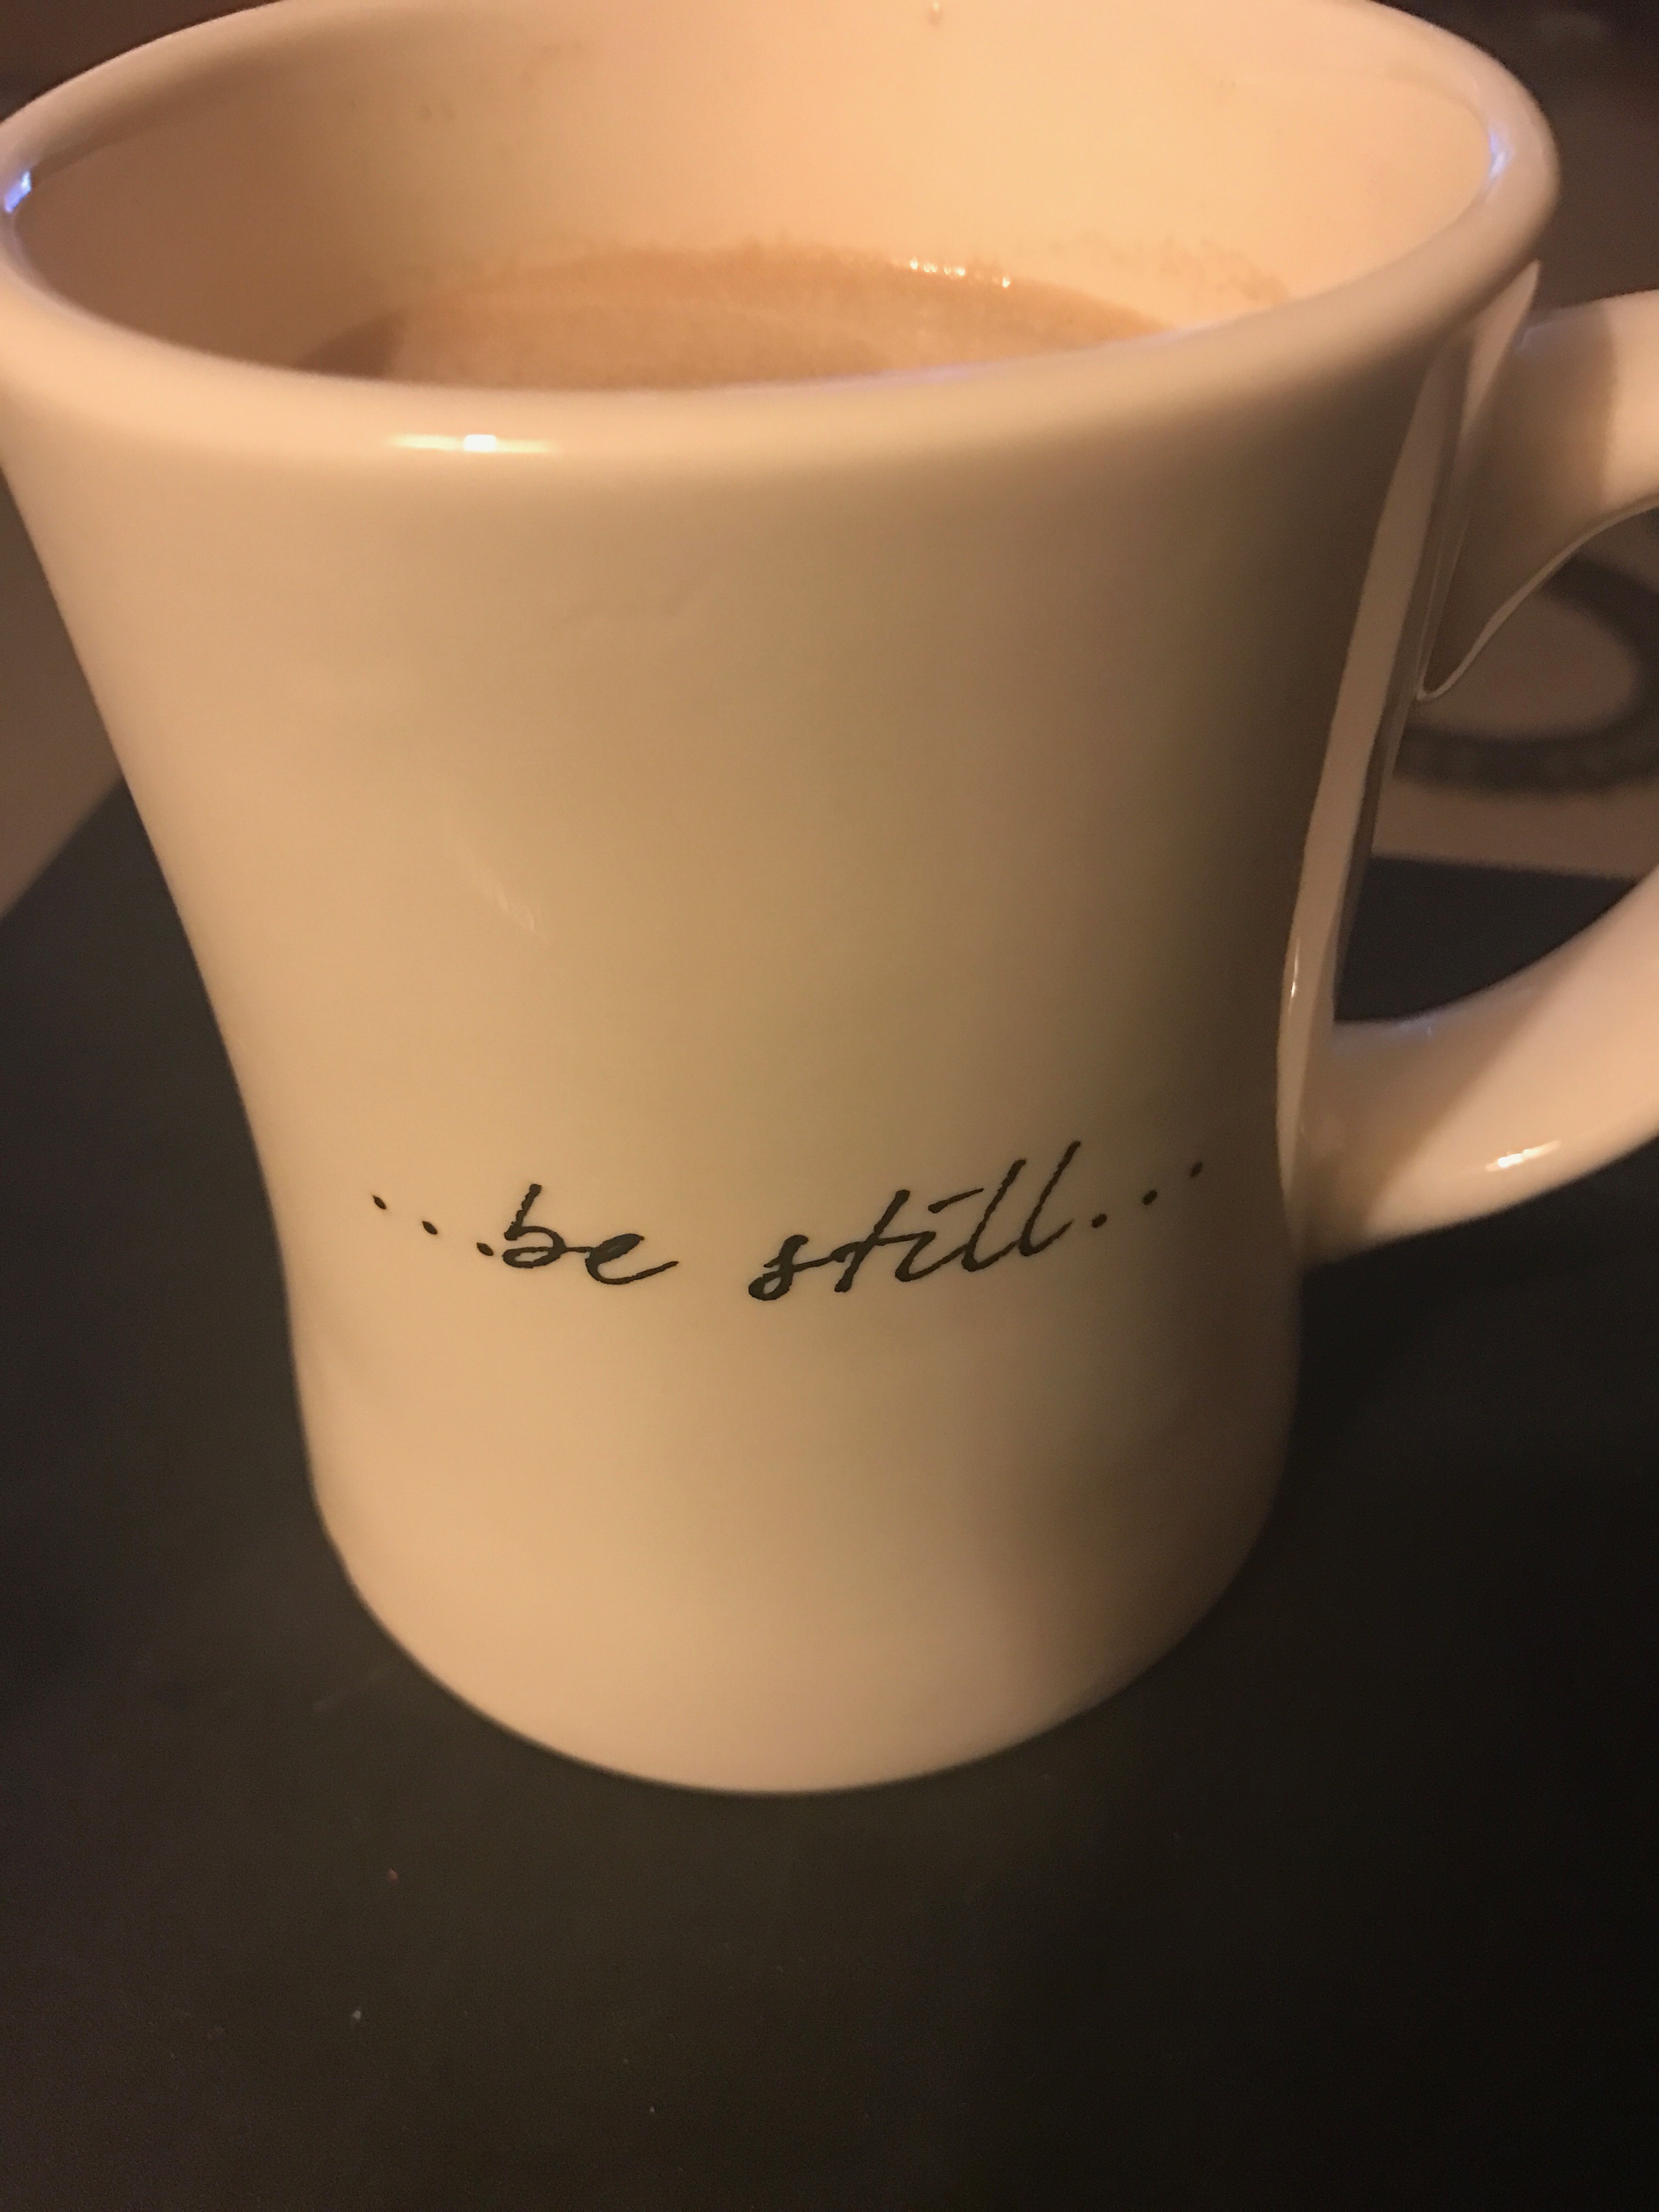 …be still…